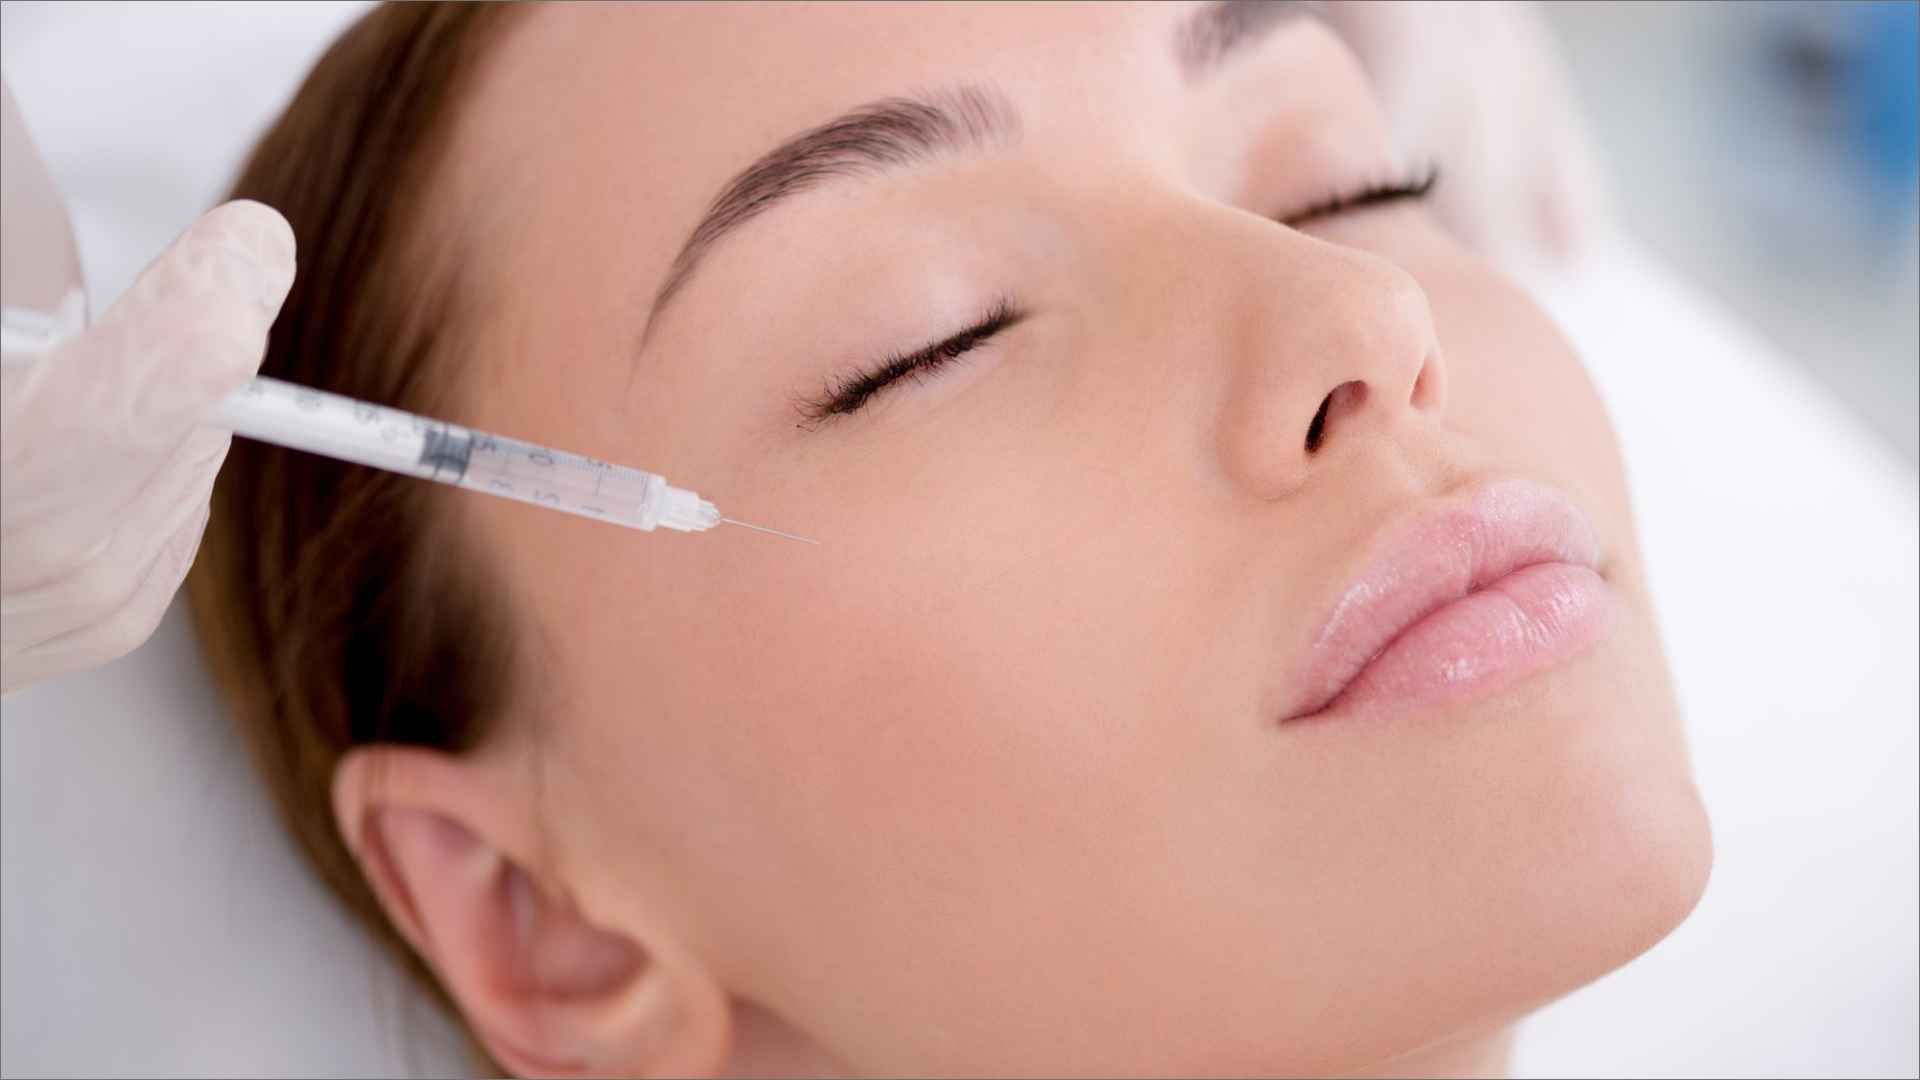 O Skinbooster serve justamente para dar um efeito “boost” na pele, ajudando a manter sua aparência jovial.